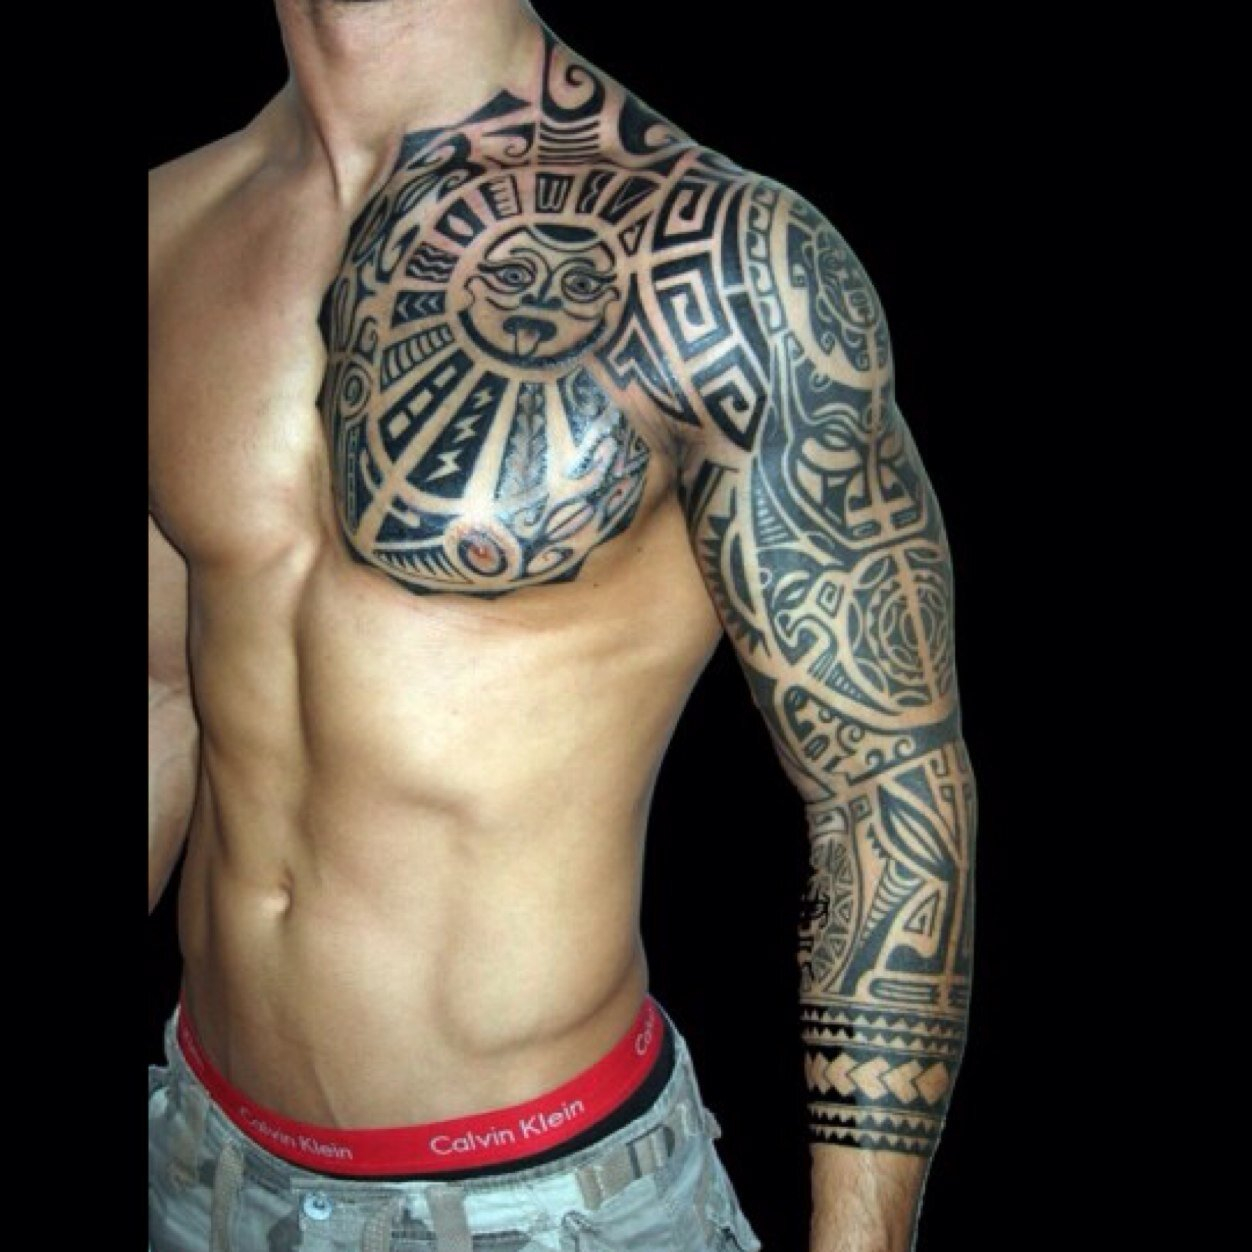 Full Left Arm Tattoos Arm Tattoo Sites